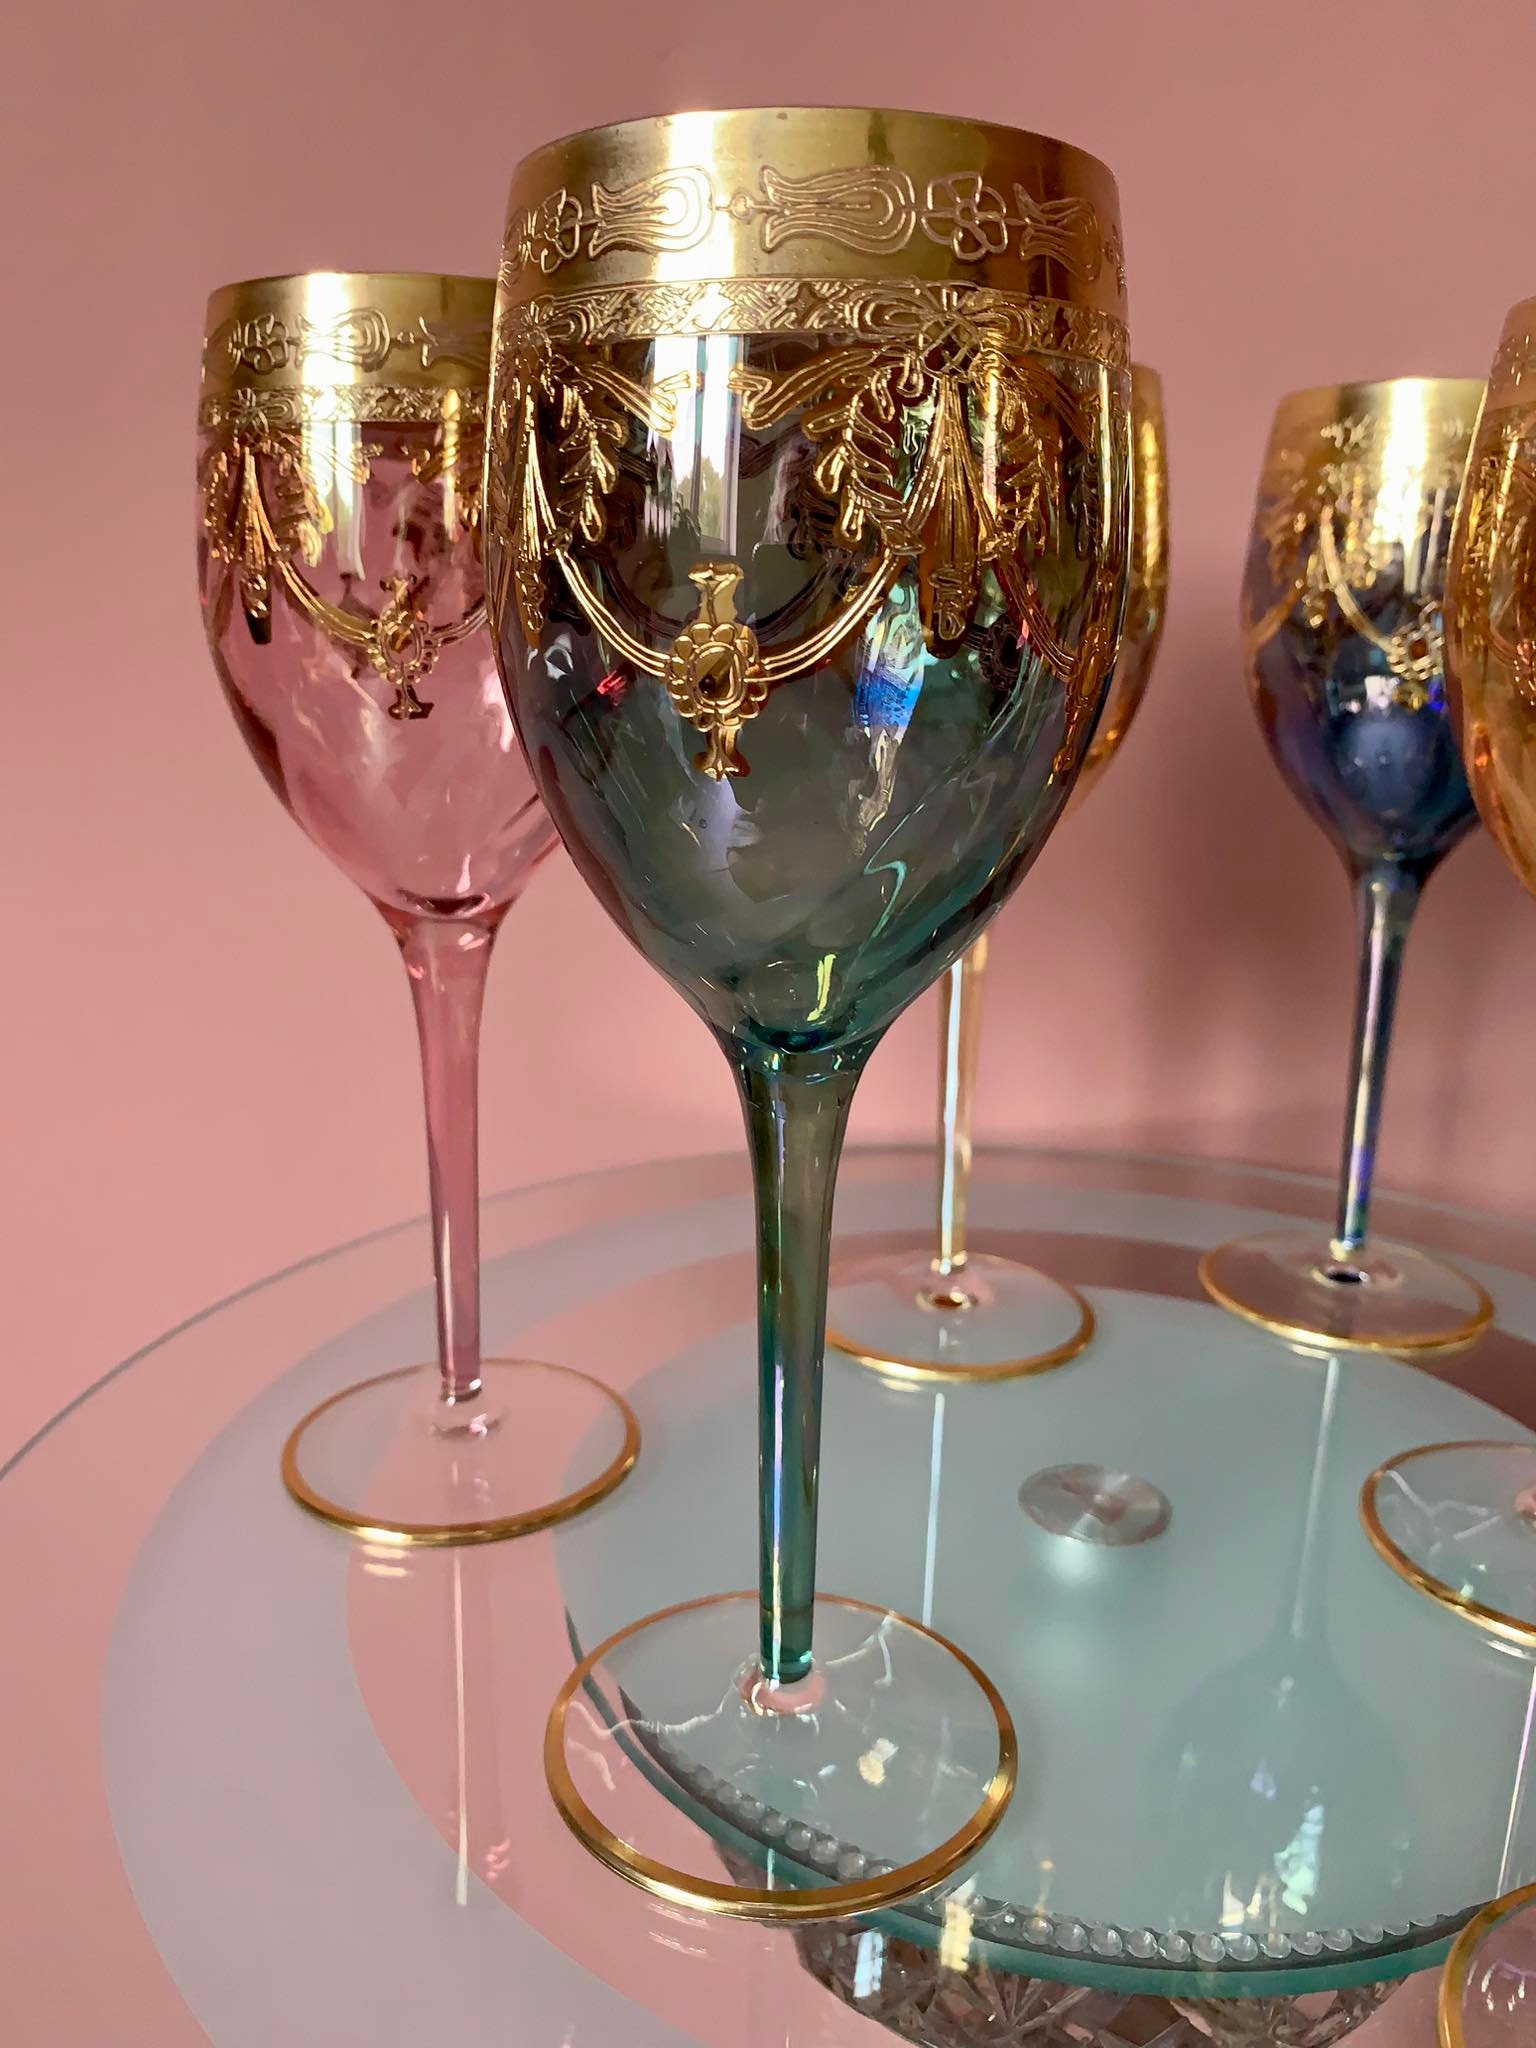 Murano-Style Pioggia Soffice Wine Glasses Set of 6 in 2023